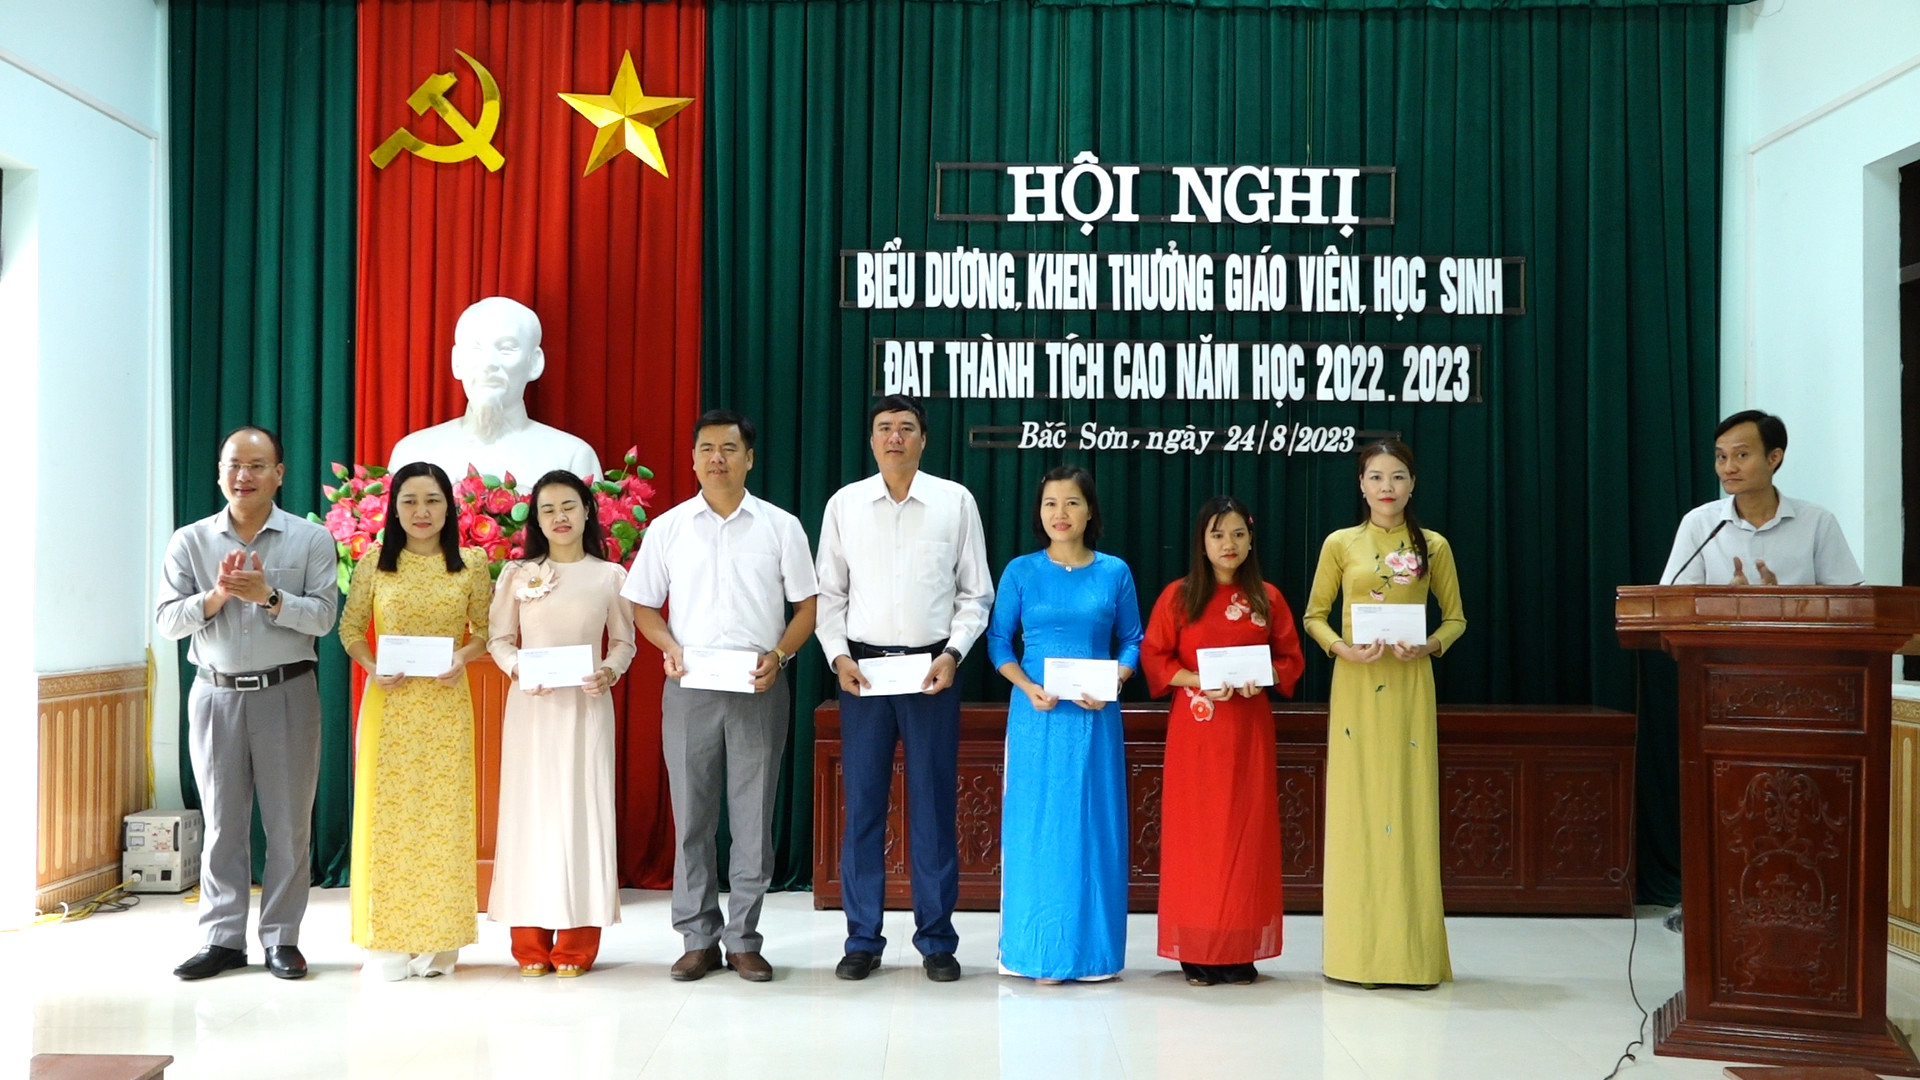 Phường Bắc Sơn tổ chức hội nghị biểu dương, khen thưởng giáo viên , học sinh đạt thành tích cao năm học 2022-2023